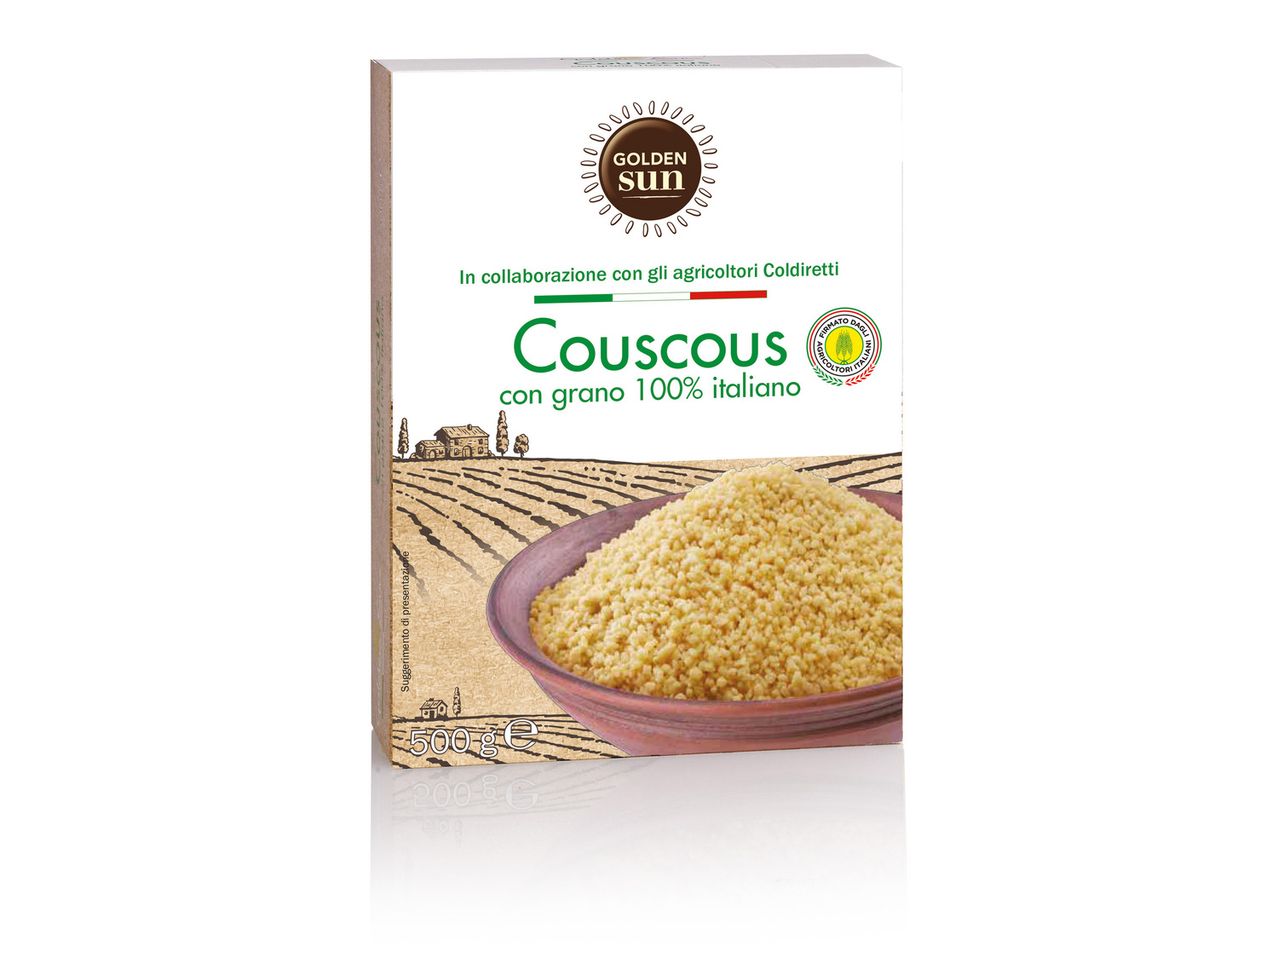 Vai alla vista a schermo intero: Couscous 100% italiano - Immagine 2